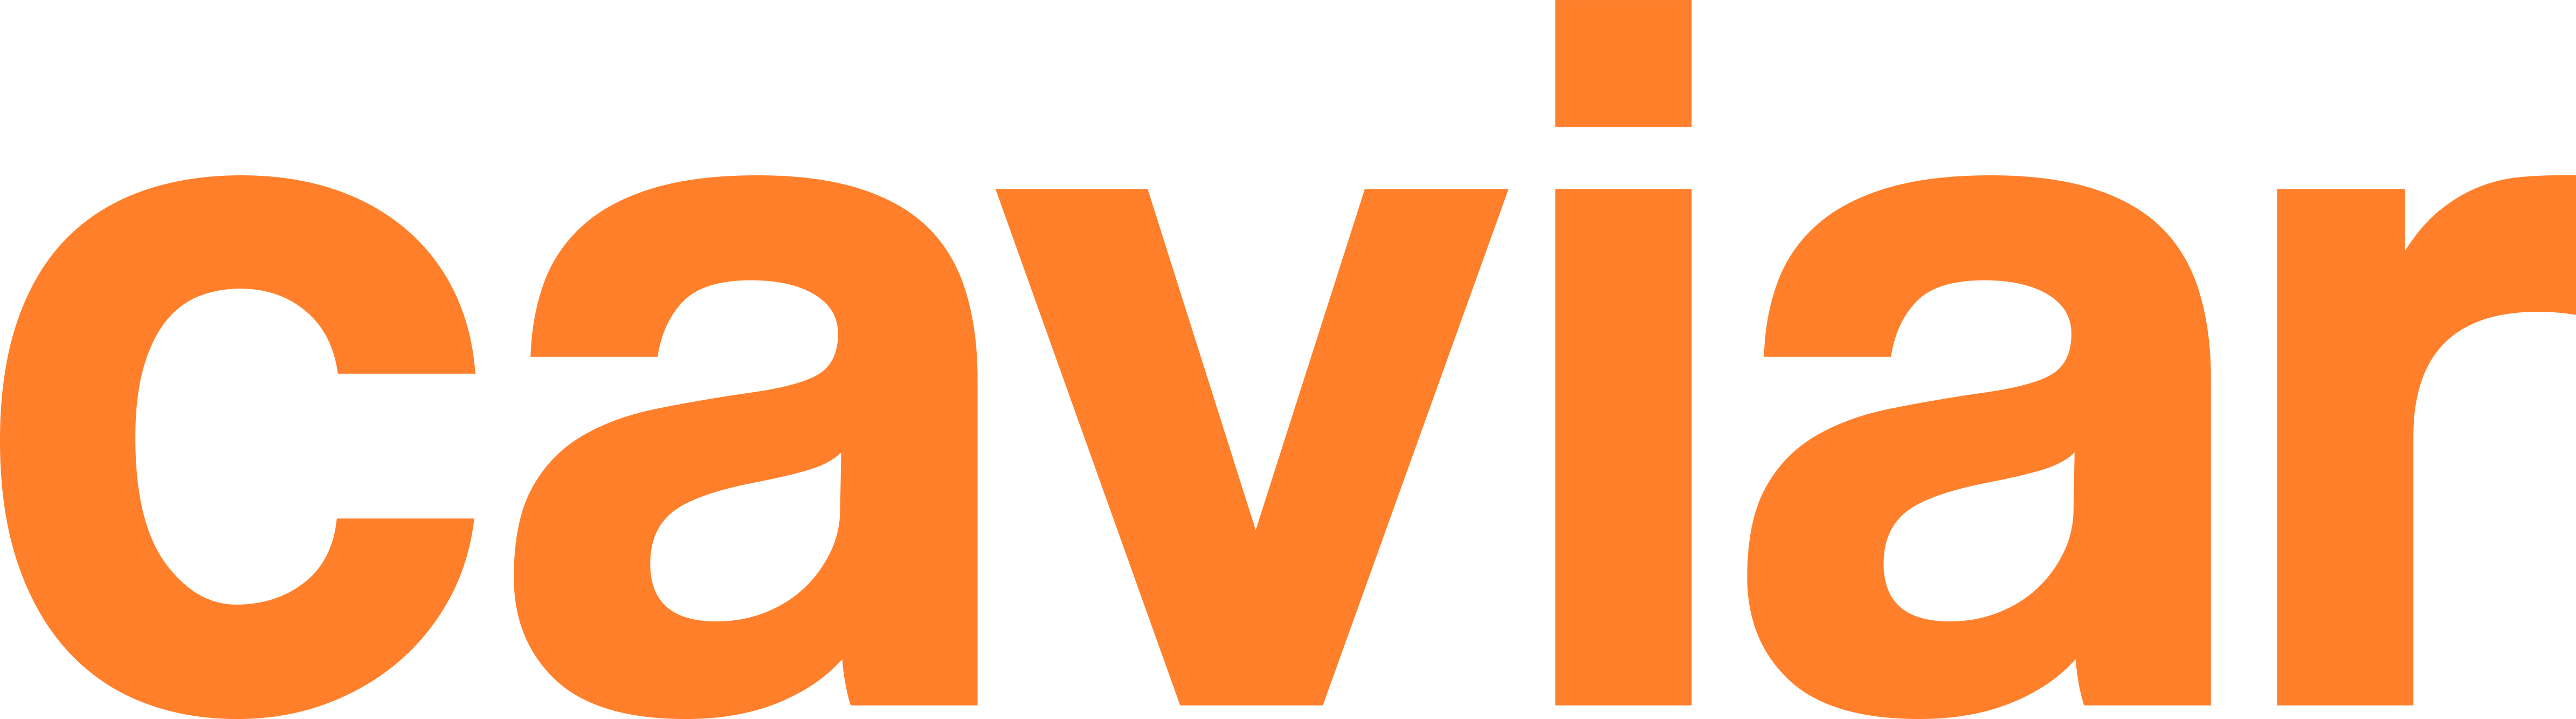 Caviar company logo